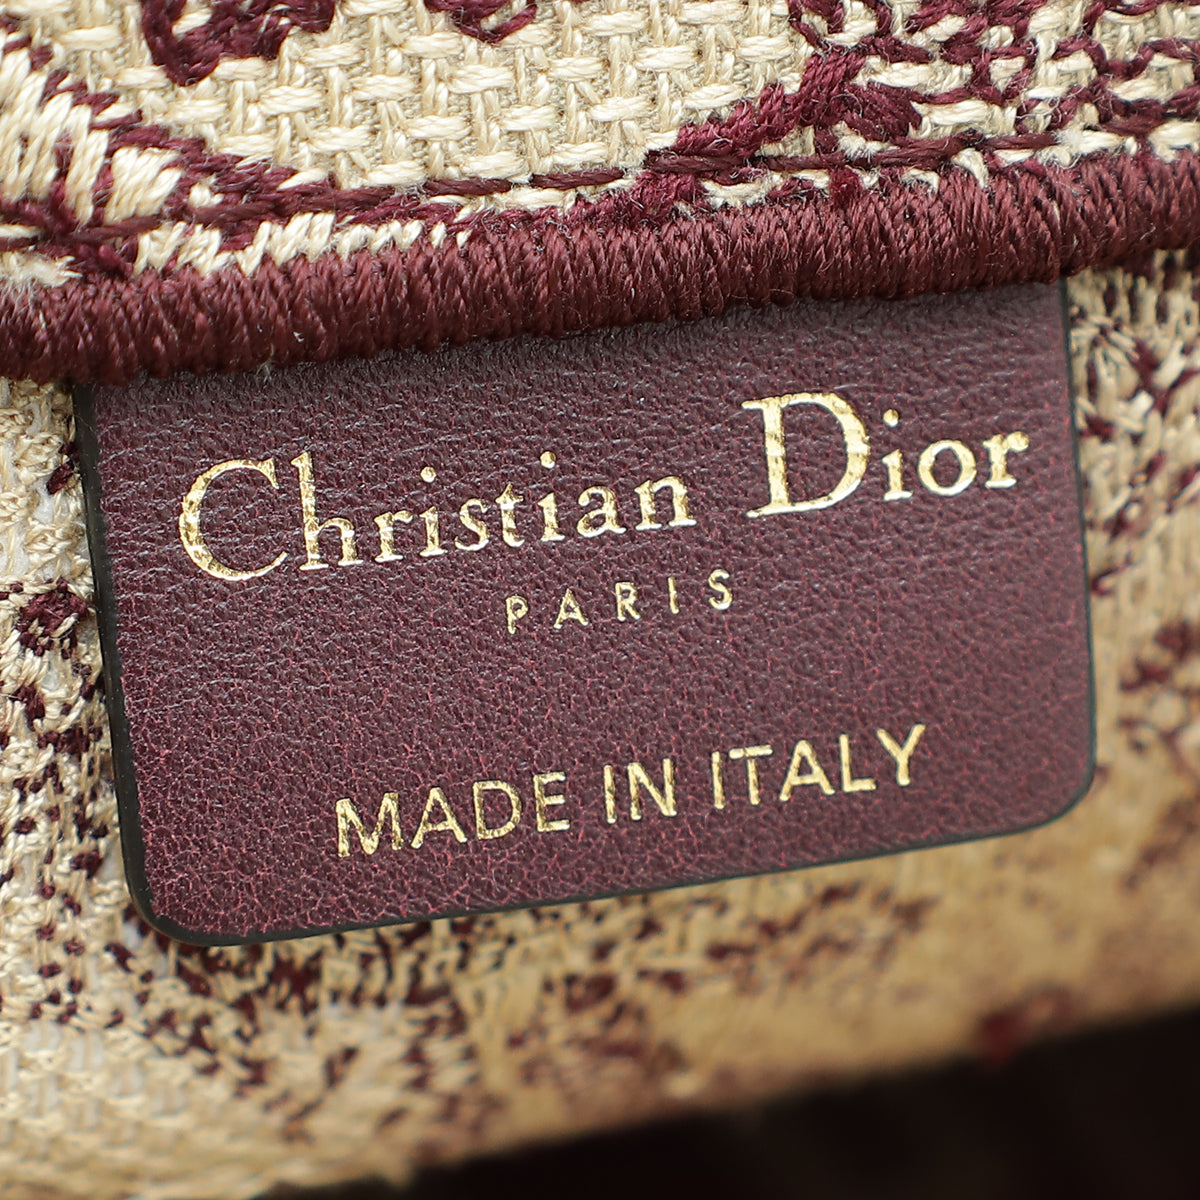 Christian Dior Dioriviera Toile De Jouy Book Tote Large Bag